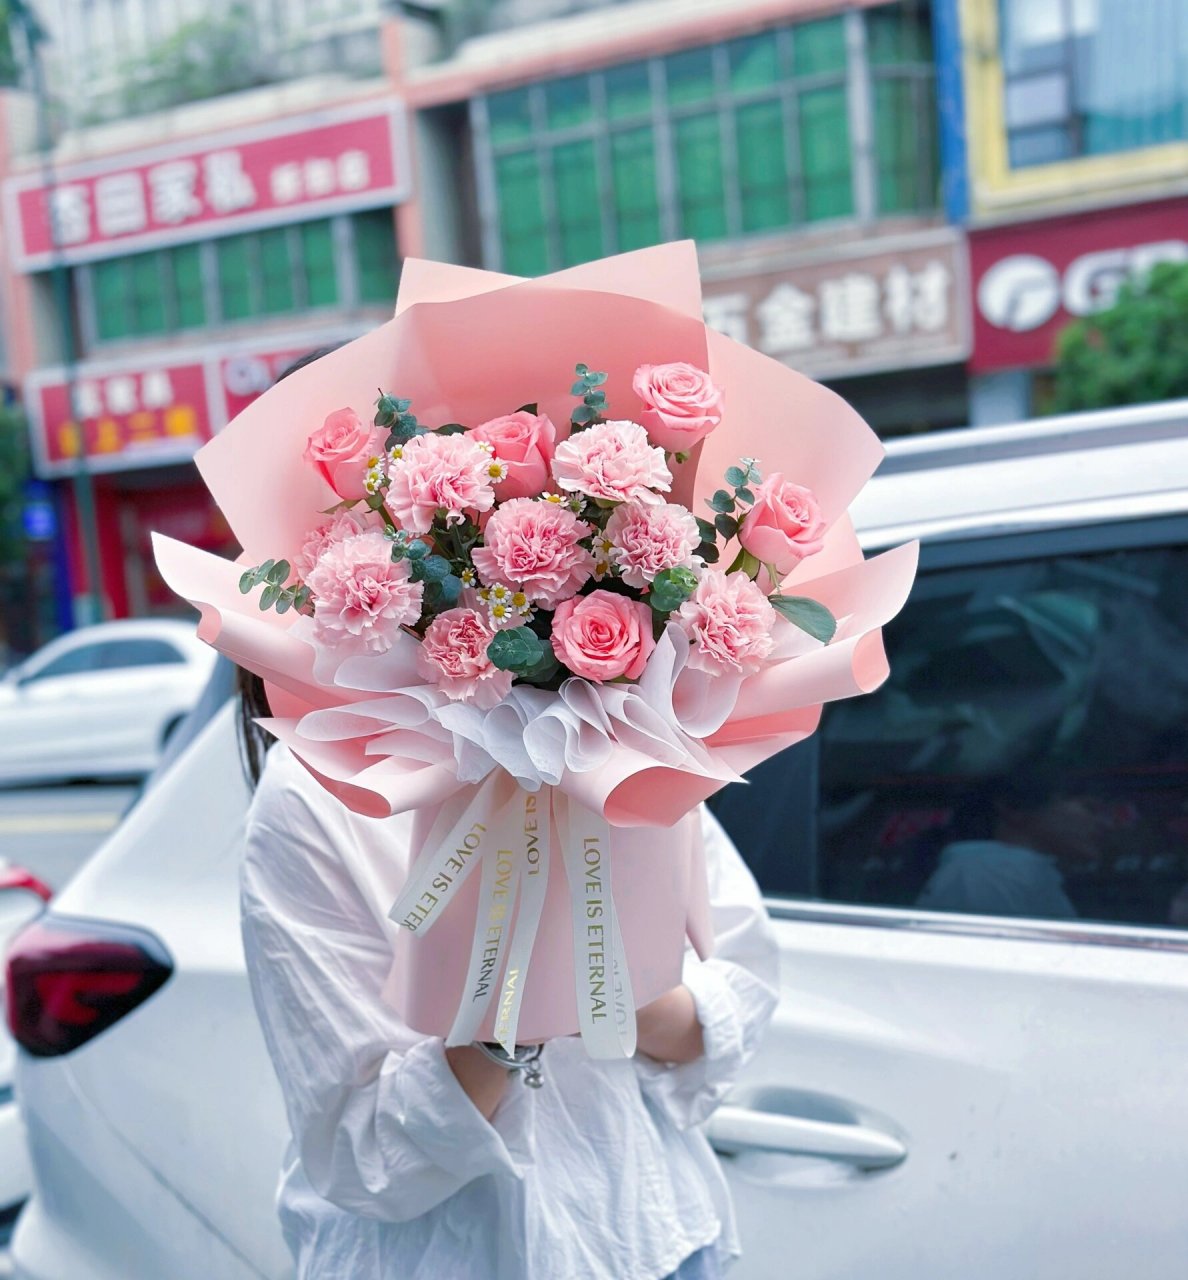 母亲节粉玫瑰粉色康乃馨混搭花束 母亲节到了,希望这个性价比比较高的